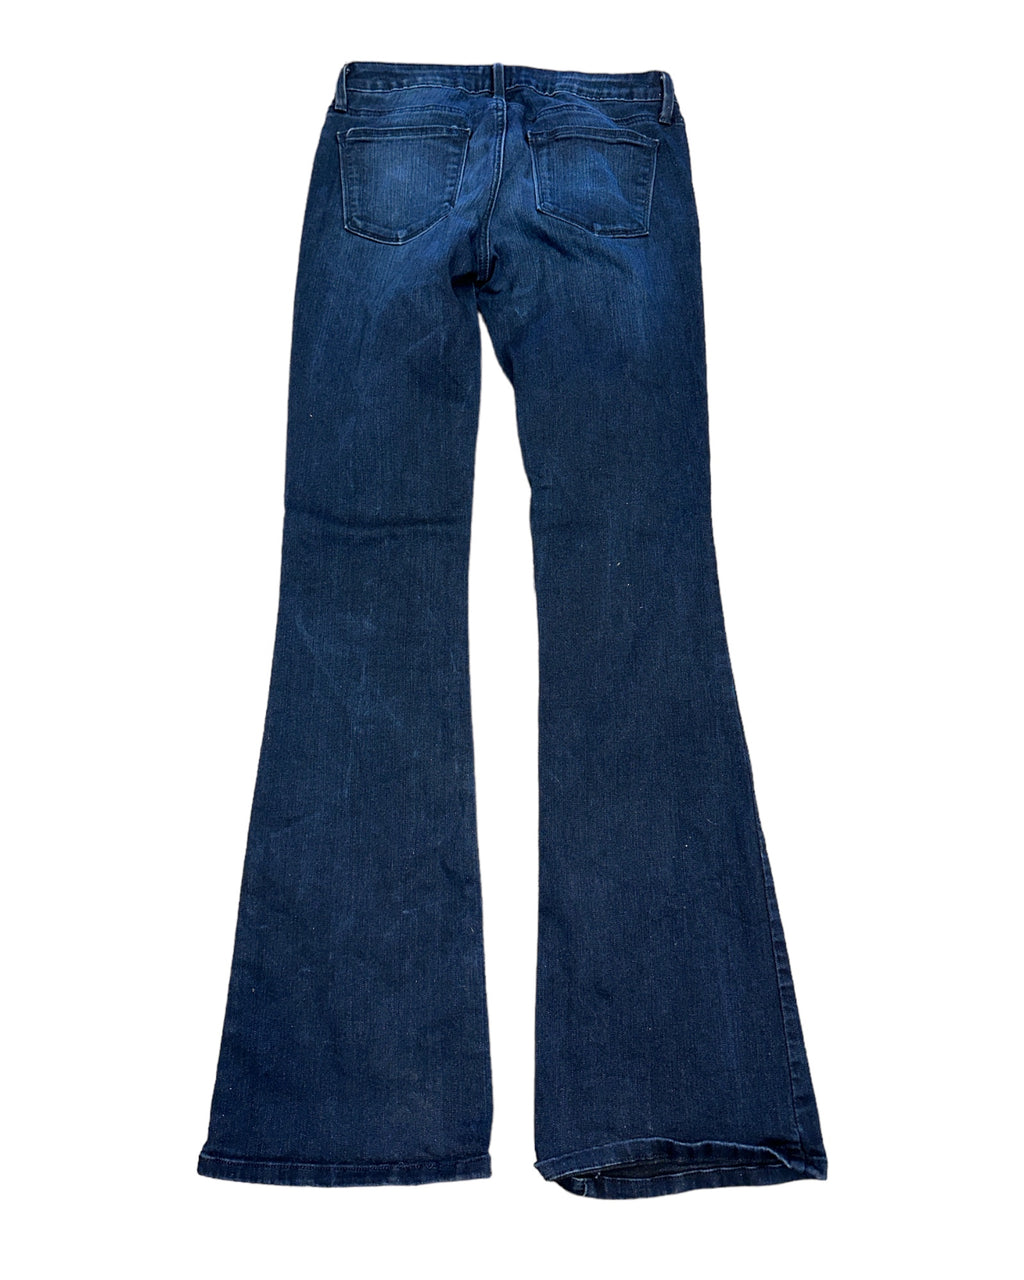 Darkwash JustBlack Bootcut Jeans, 27